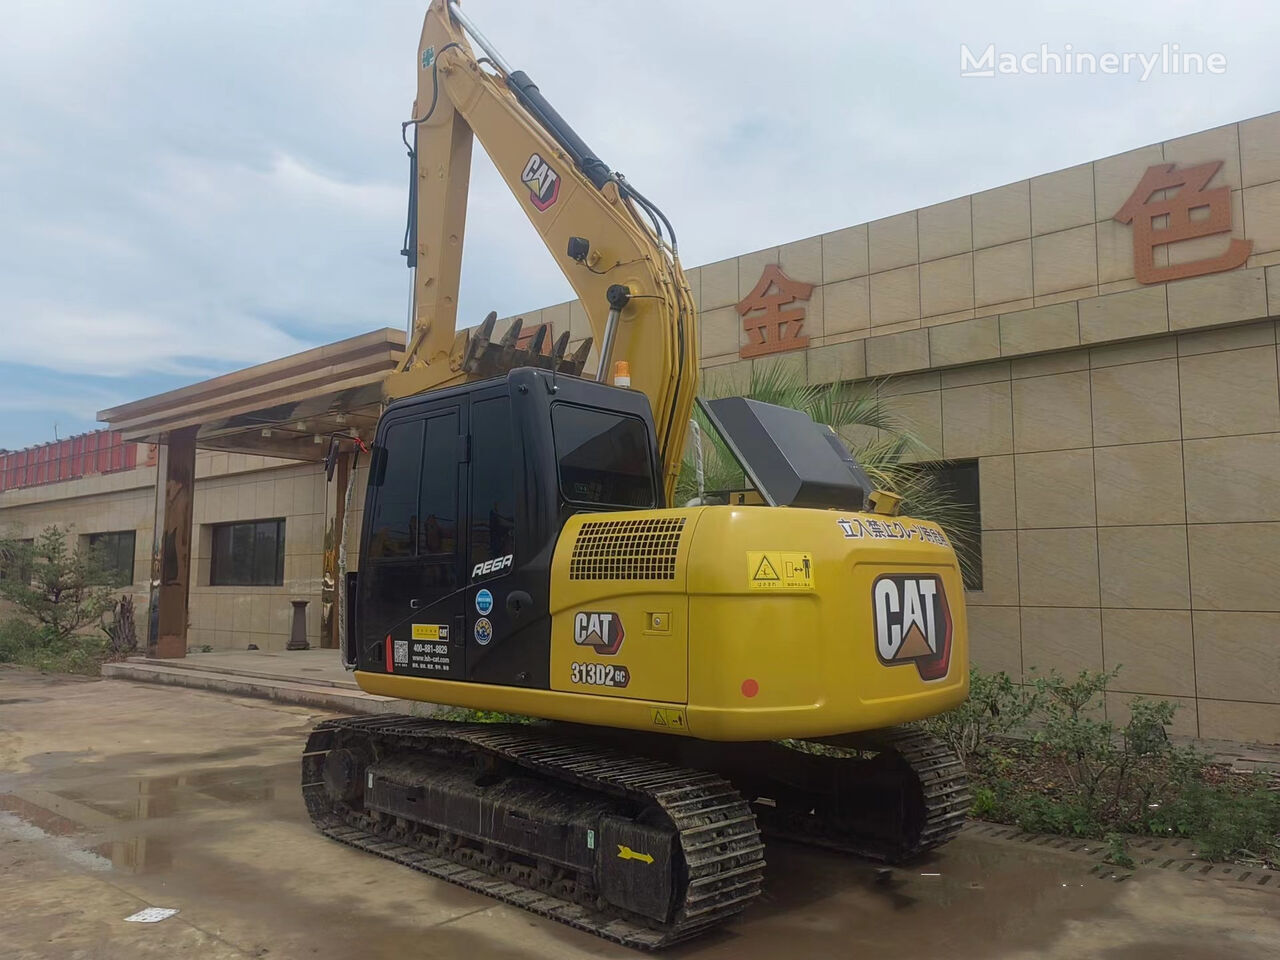 Crawler excavator CATERPILLAR 313D CAT hydraulic excavator 13 tons: picture 2